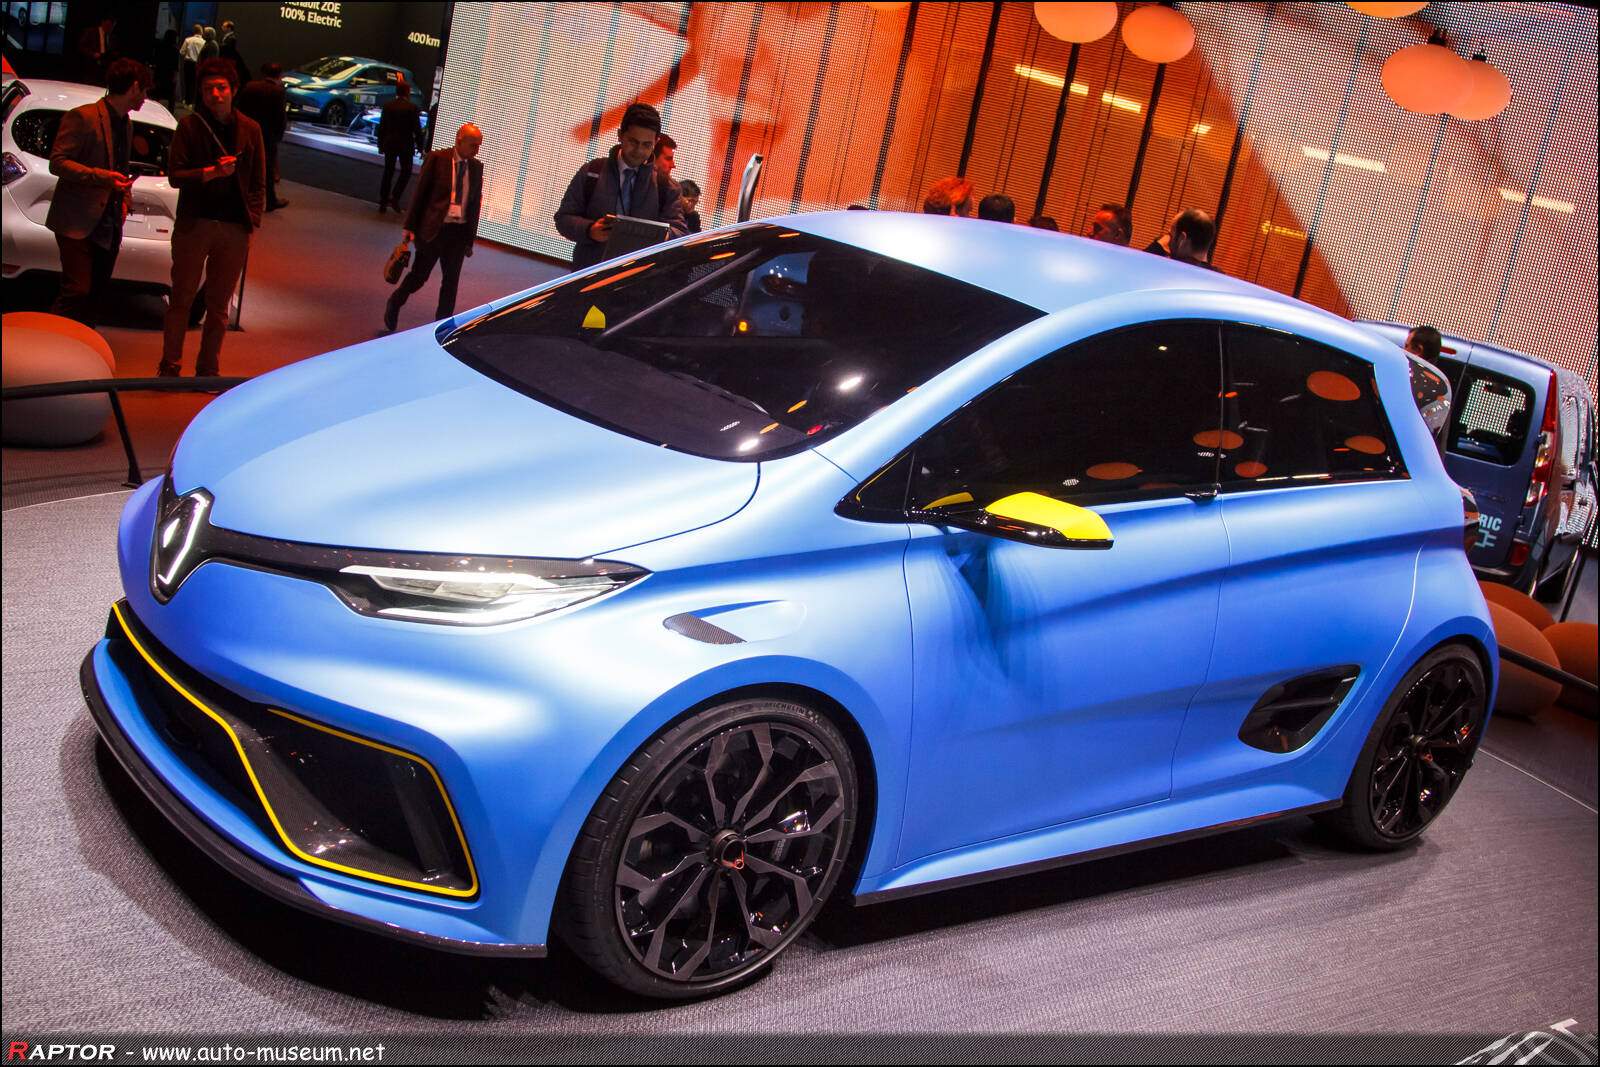 Renault Zoe e-Sport Concept (2017),  ajouté par Raptor